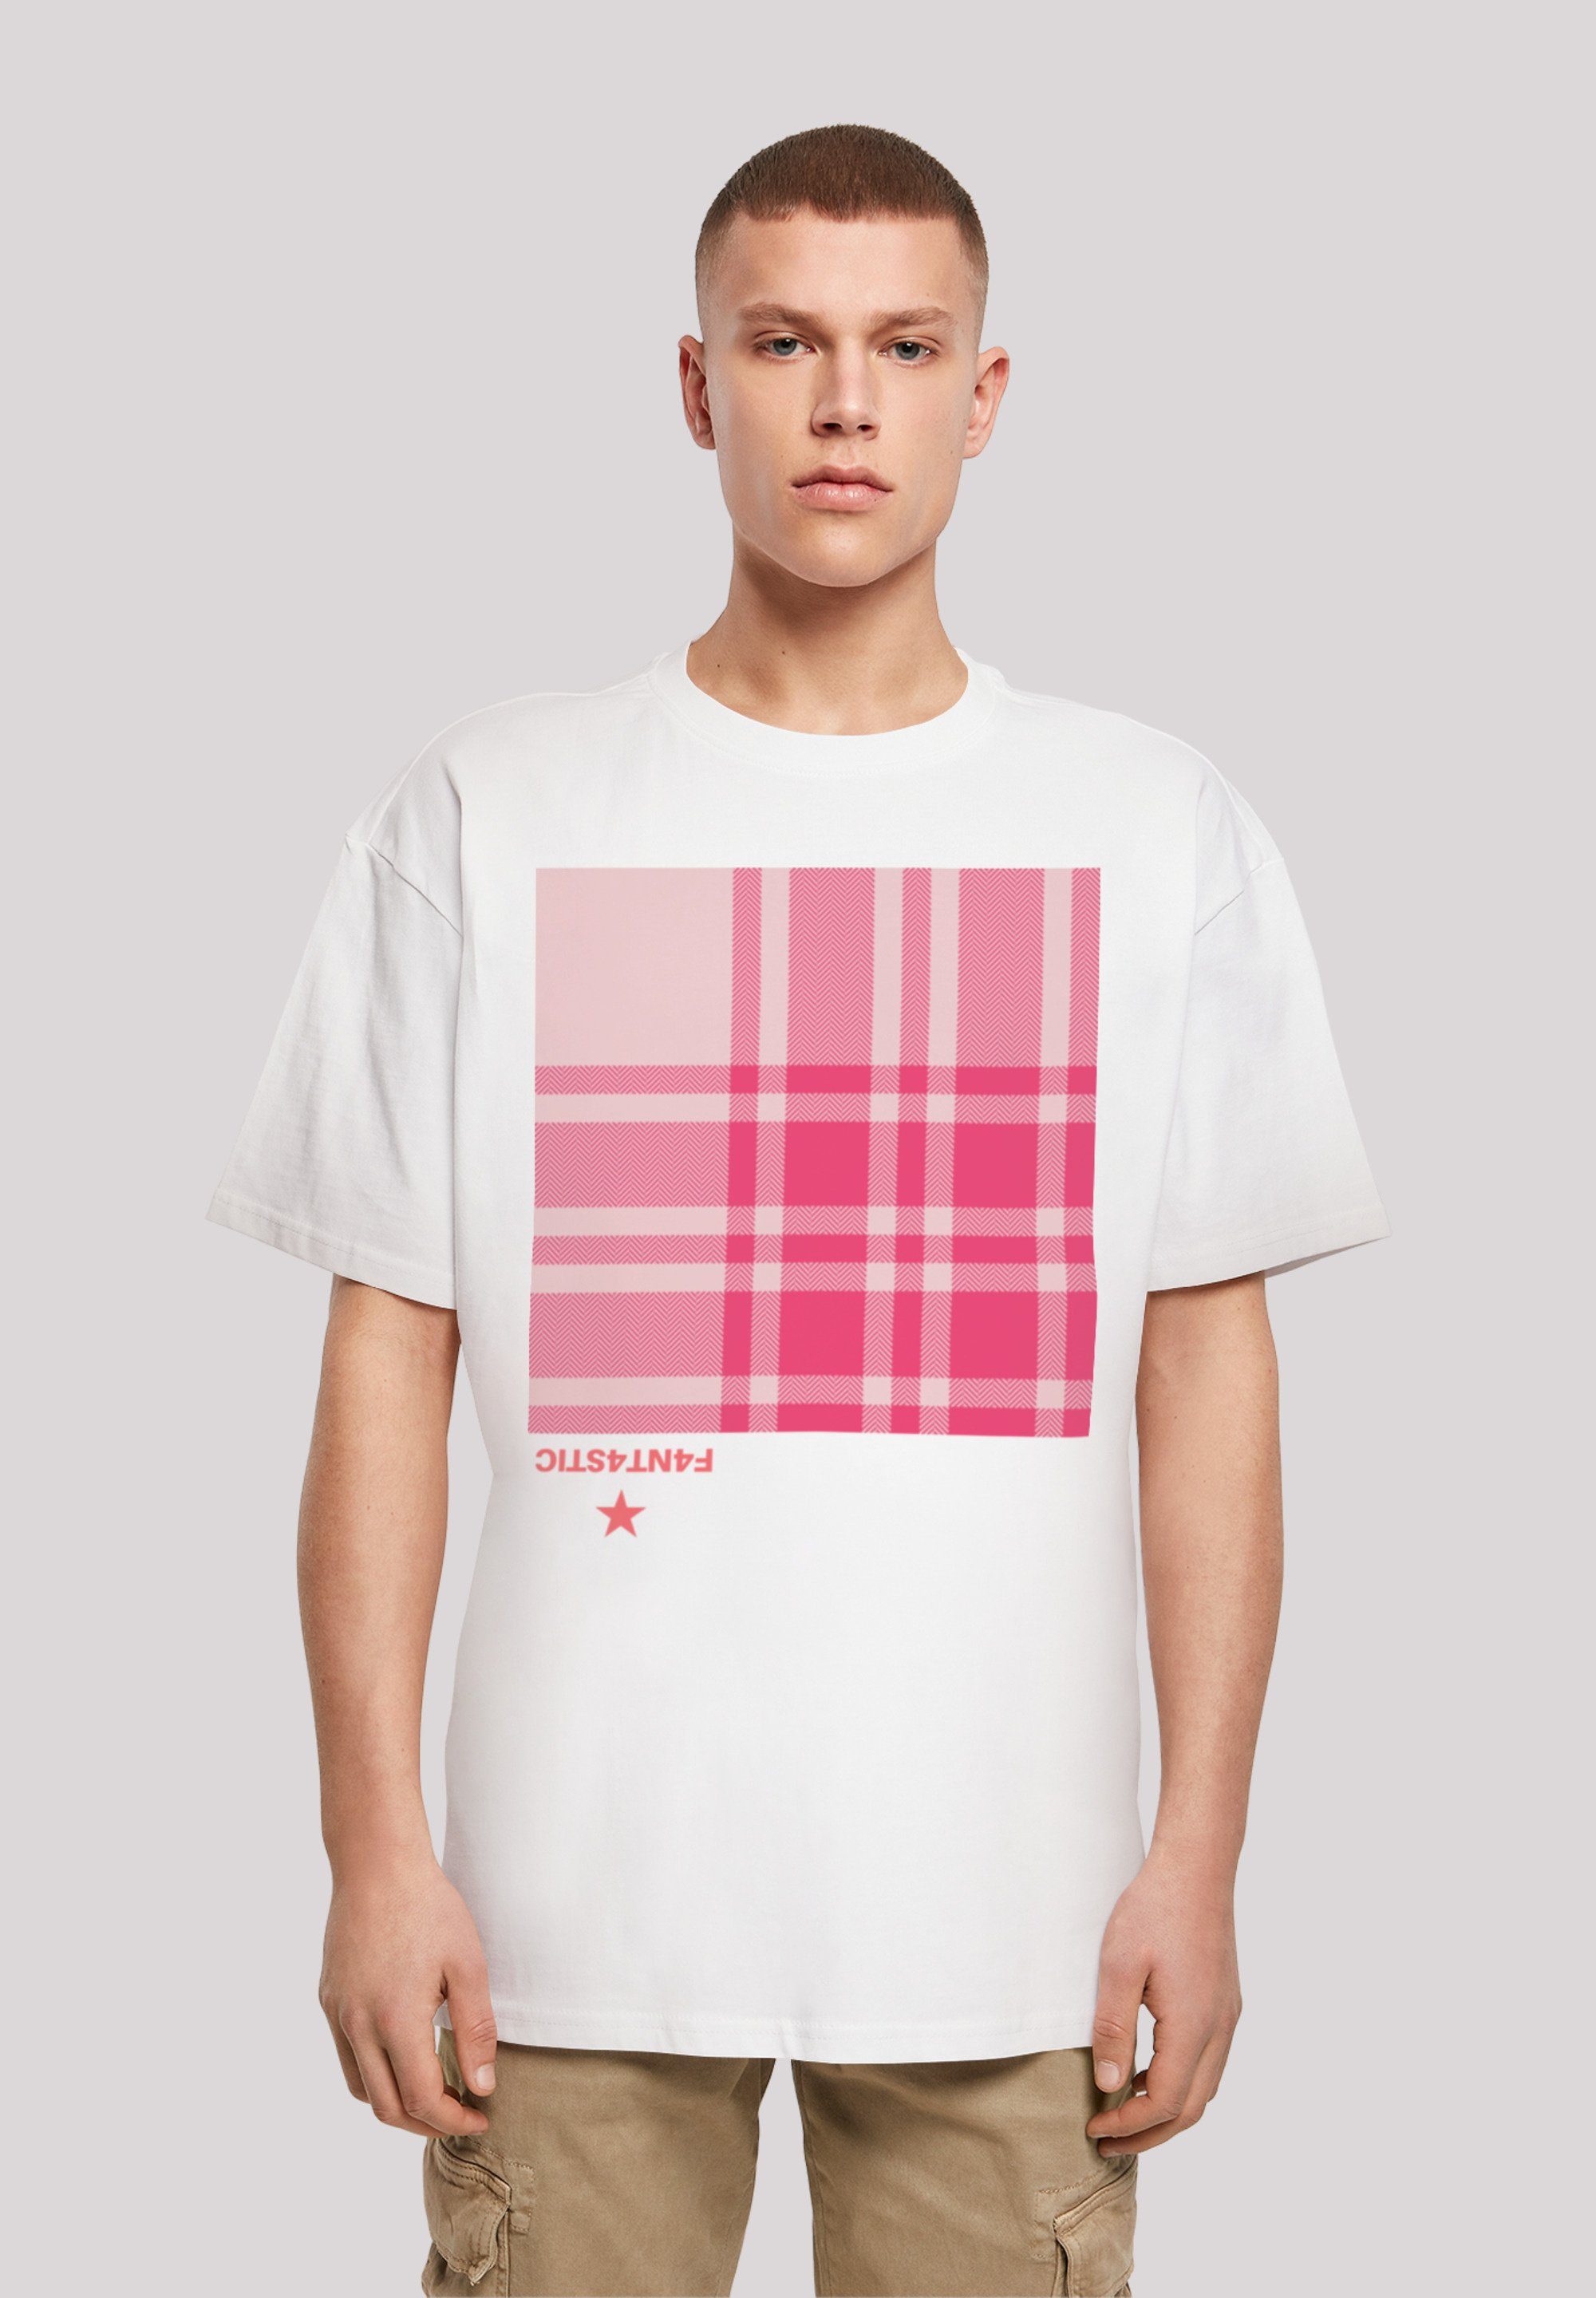 F4NT4STIC T-Shirt Karo Fällt Größe weit kleiner aus, Print, Pink bestellen eine bitte